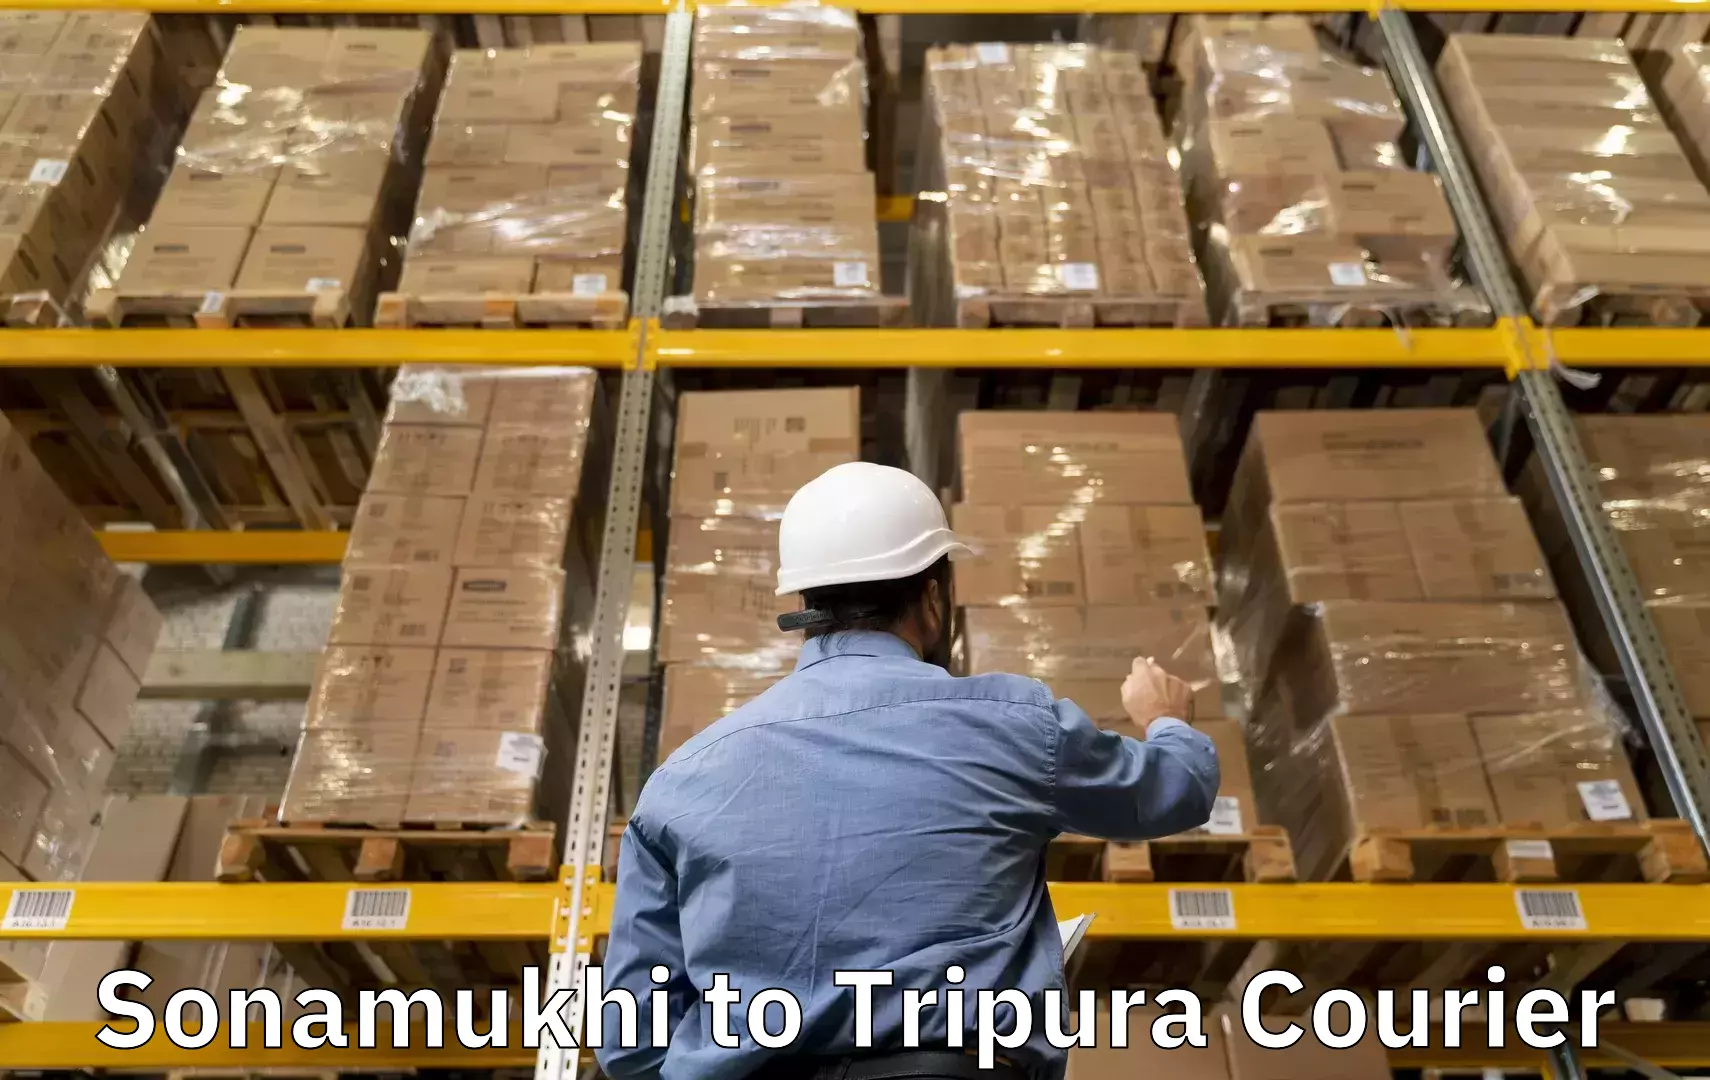 Baggage shipping schedule Sonamukhi to Udaipur Tripura